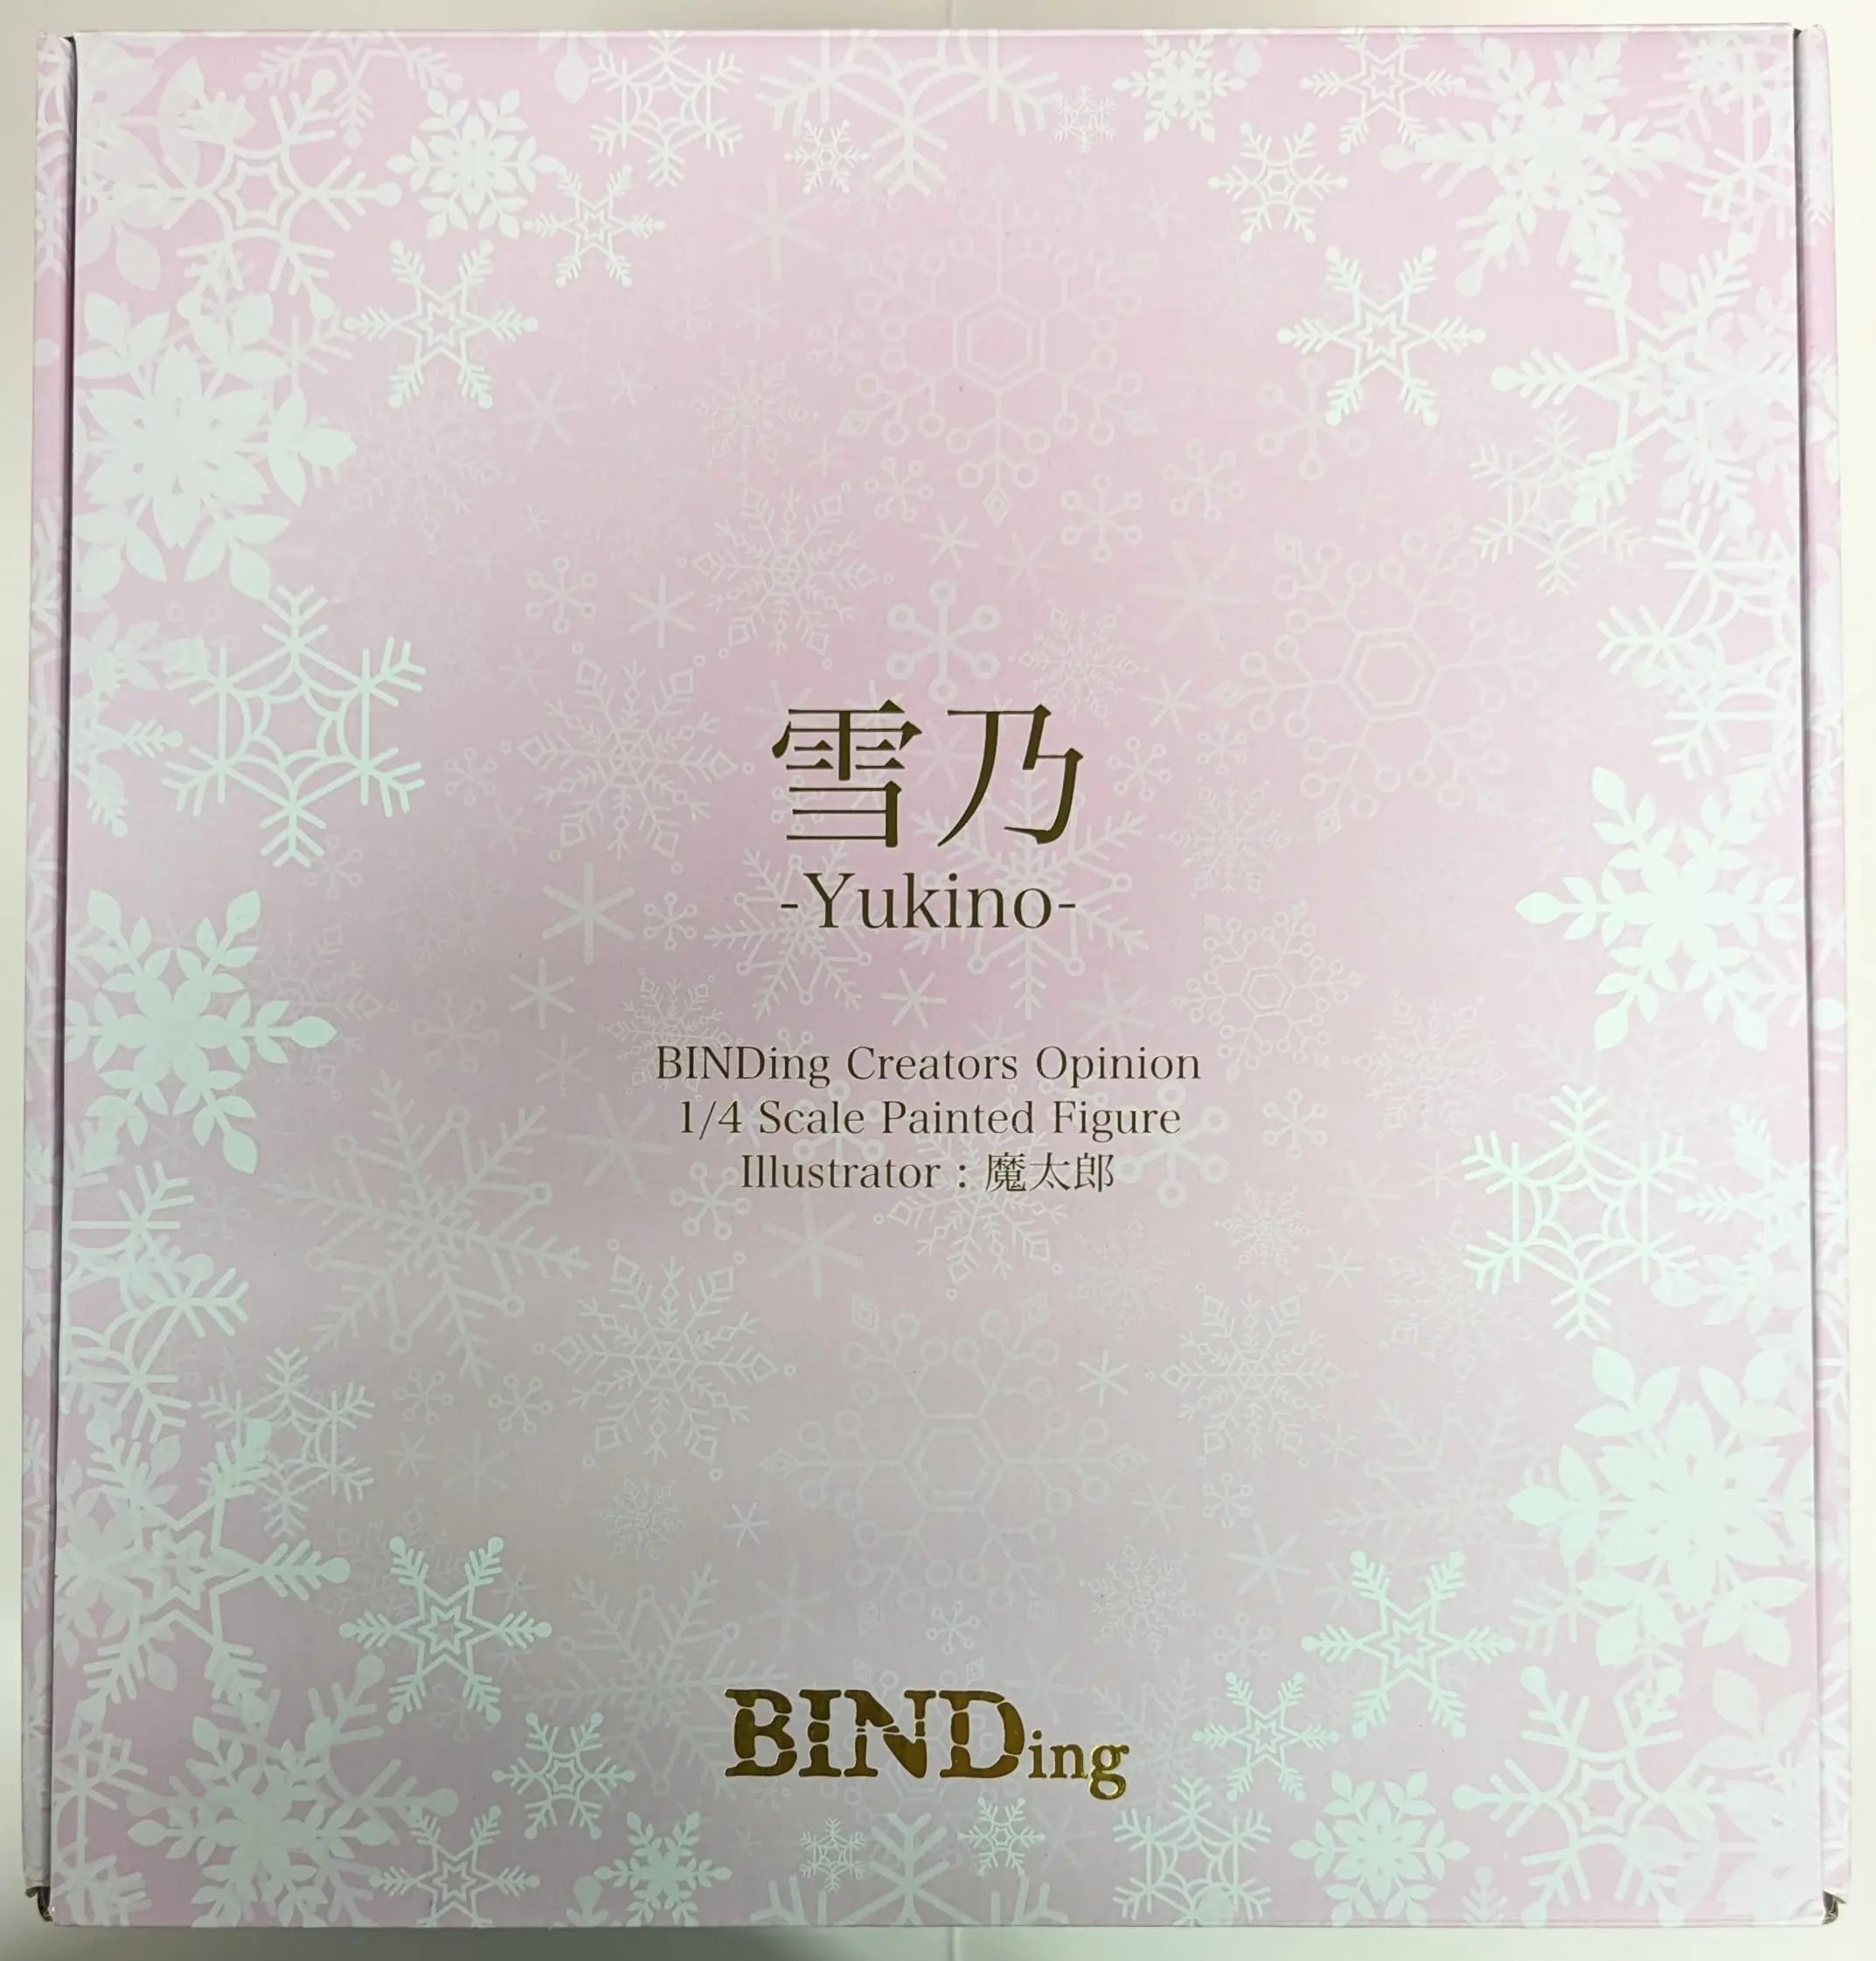 Binding Creator's Opinion - BINDing - Yukino(BINDing Creators Opinion) - Matarou